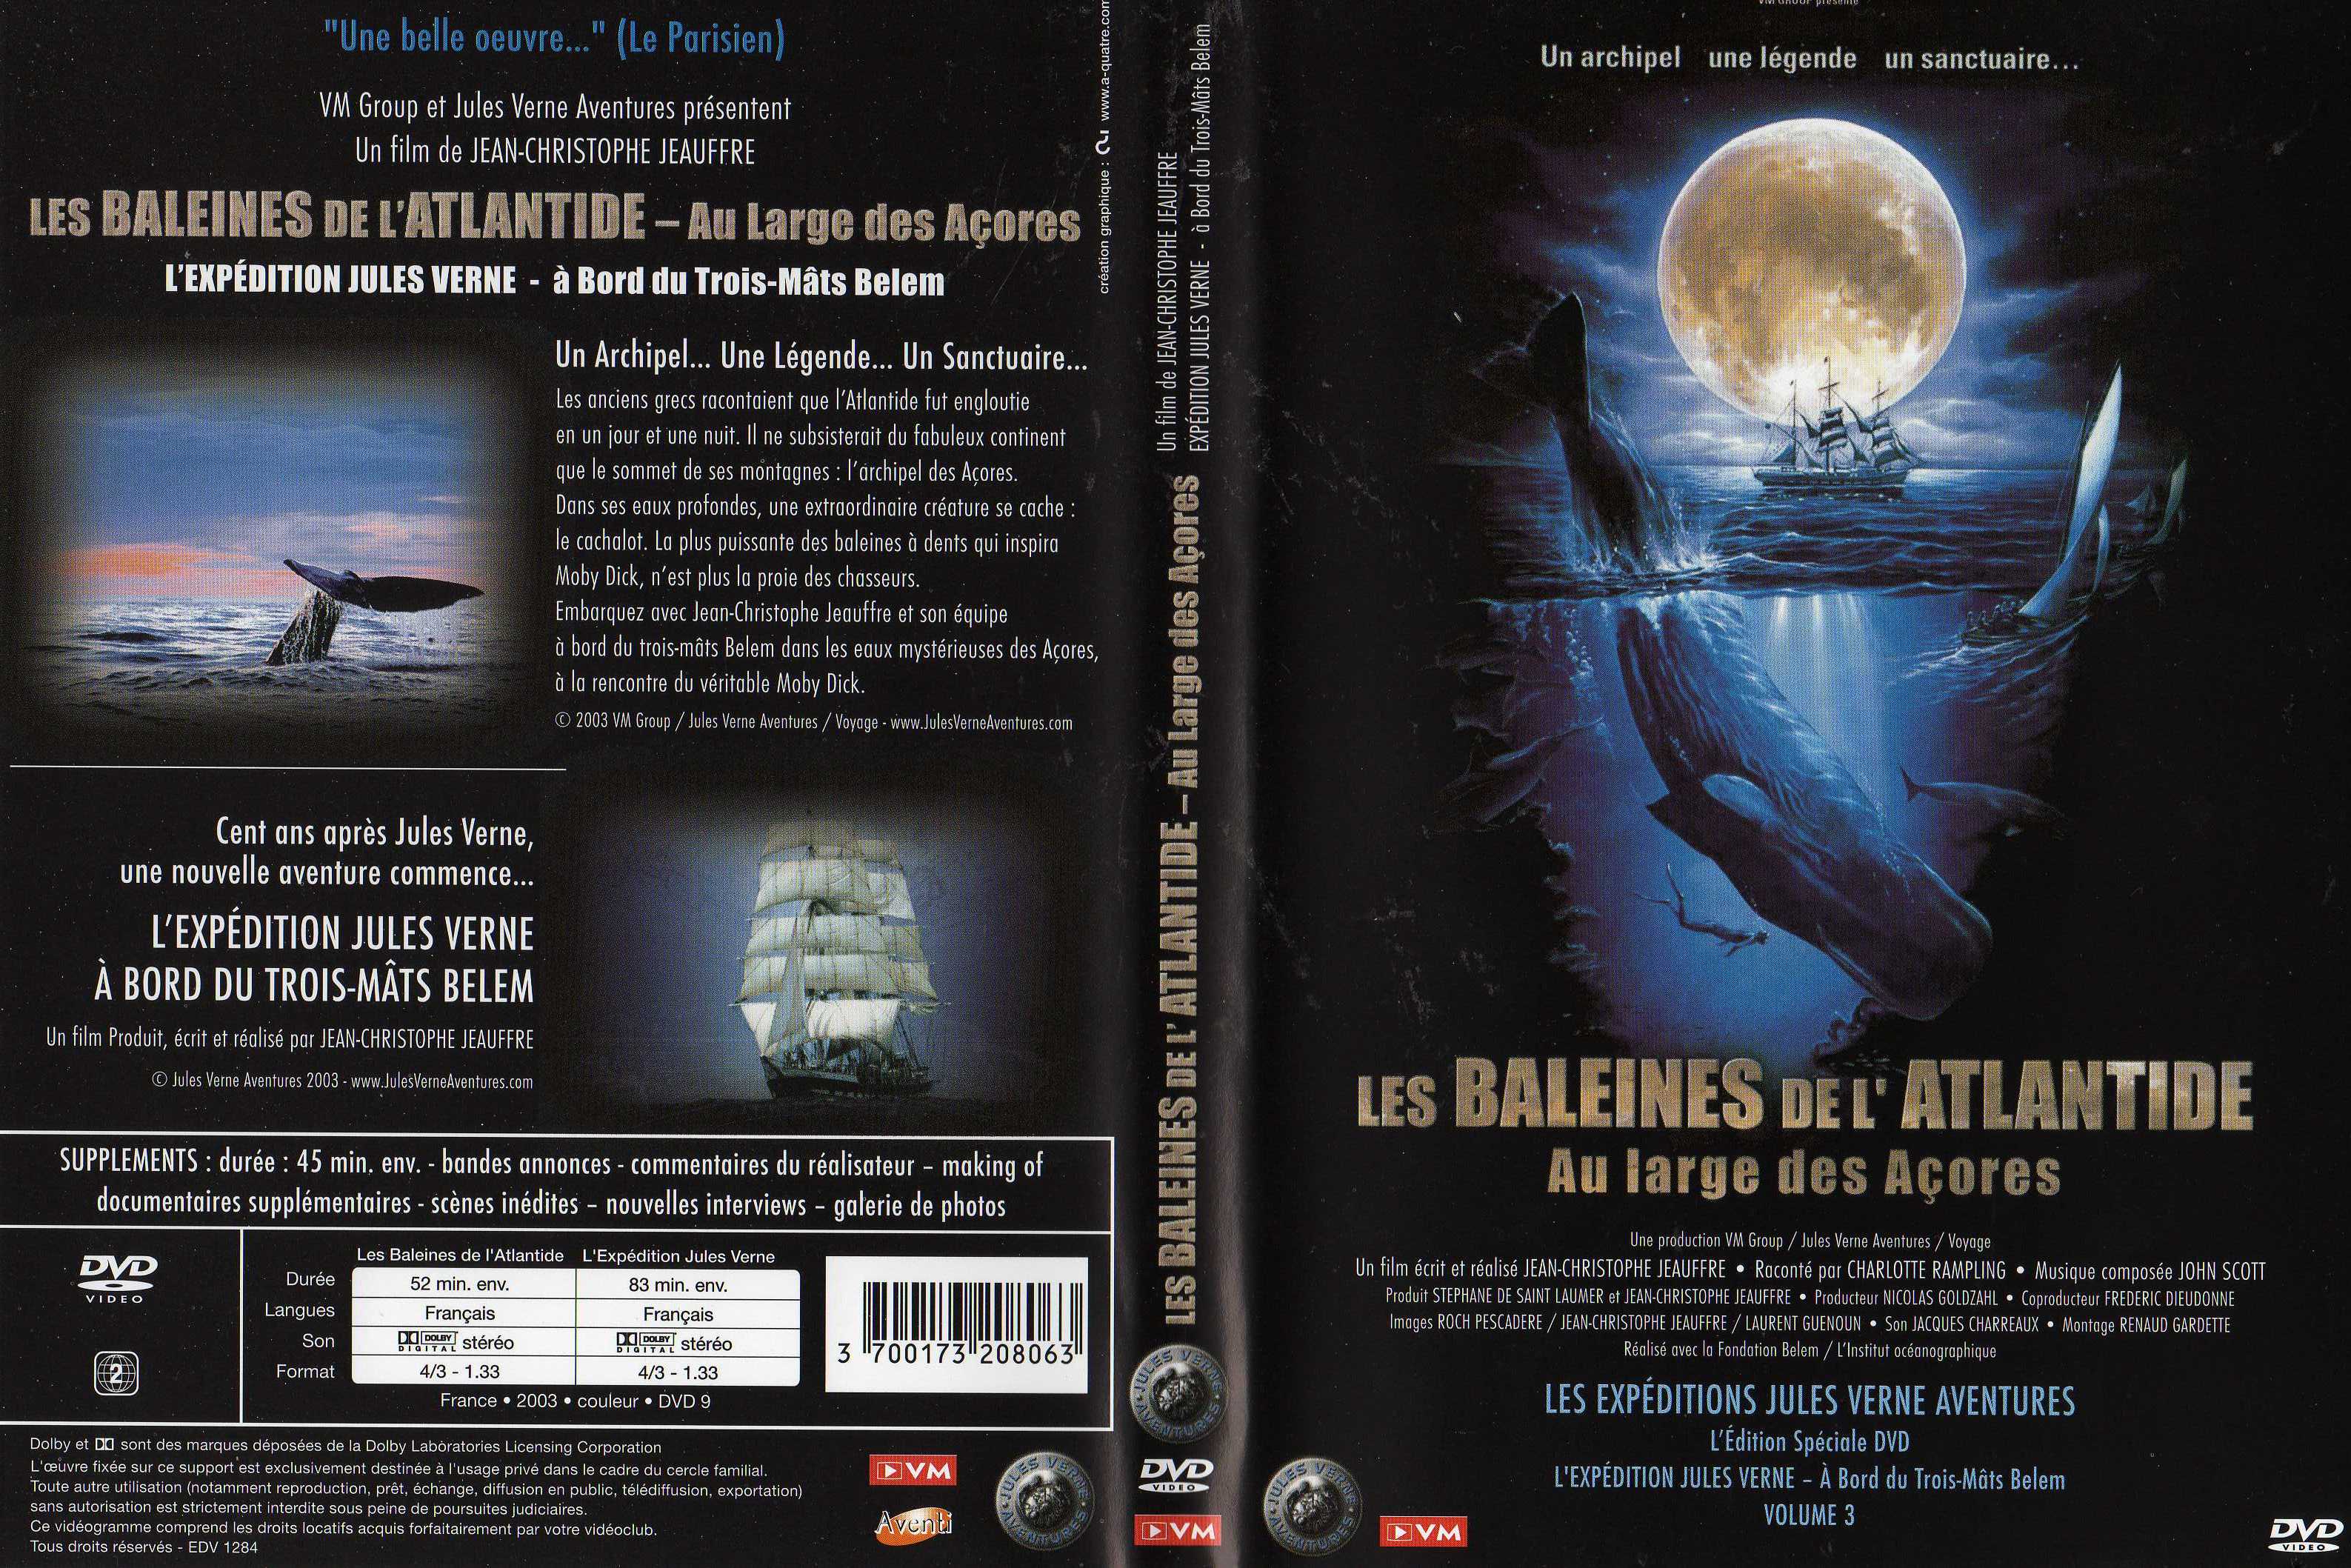 Jaquette DVD Les expditions Jules Verne - Les baleines de l